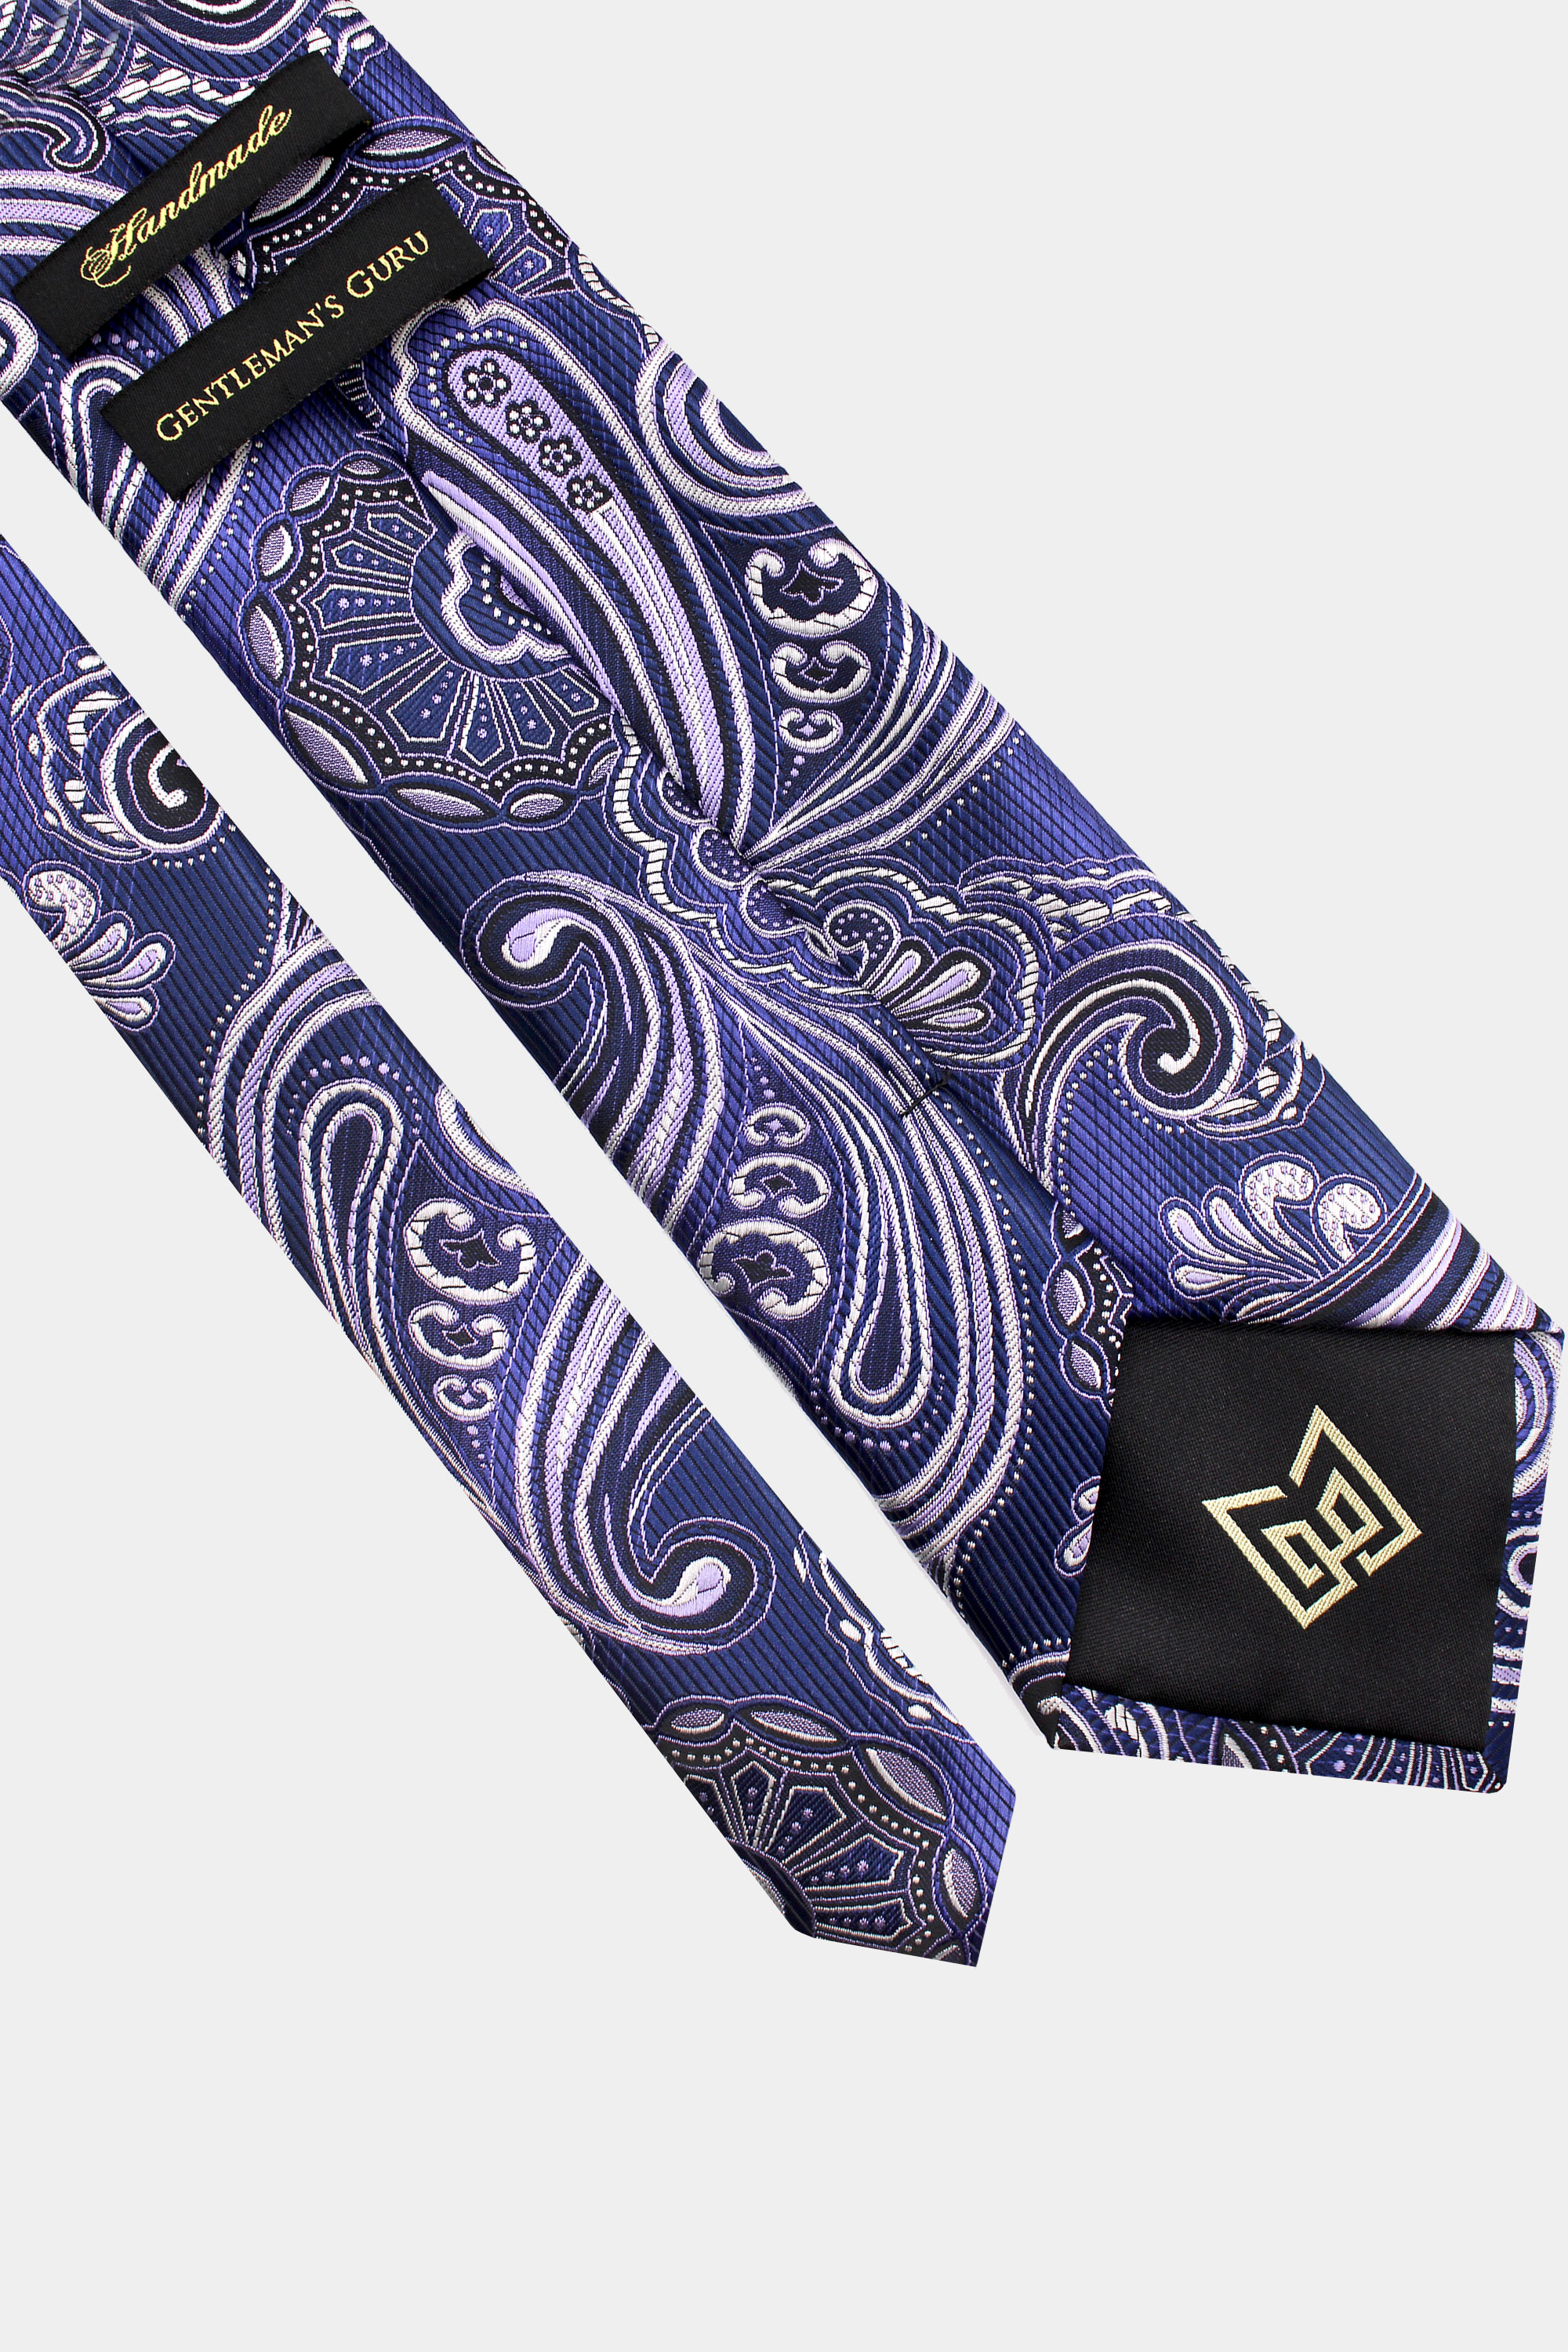 Cobalt-Blue-Tie-from-Gentlemansguru.com